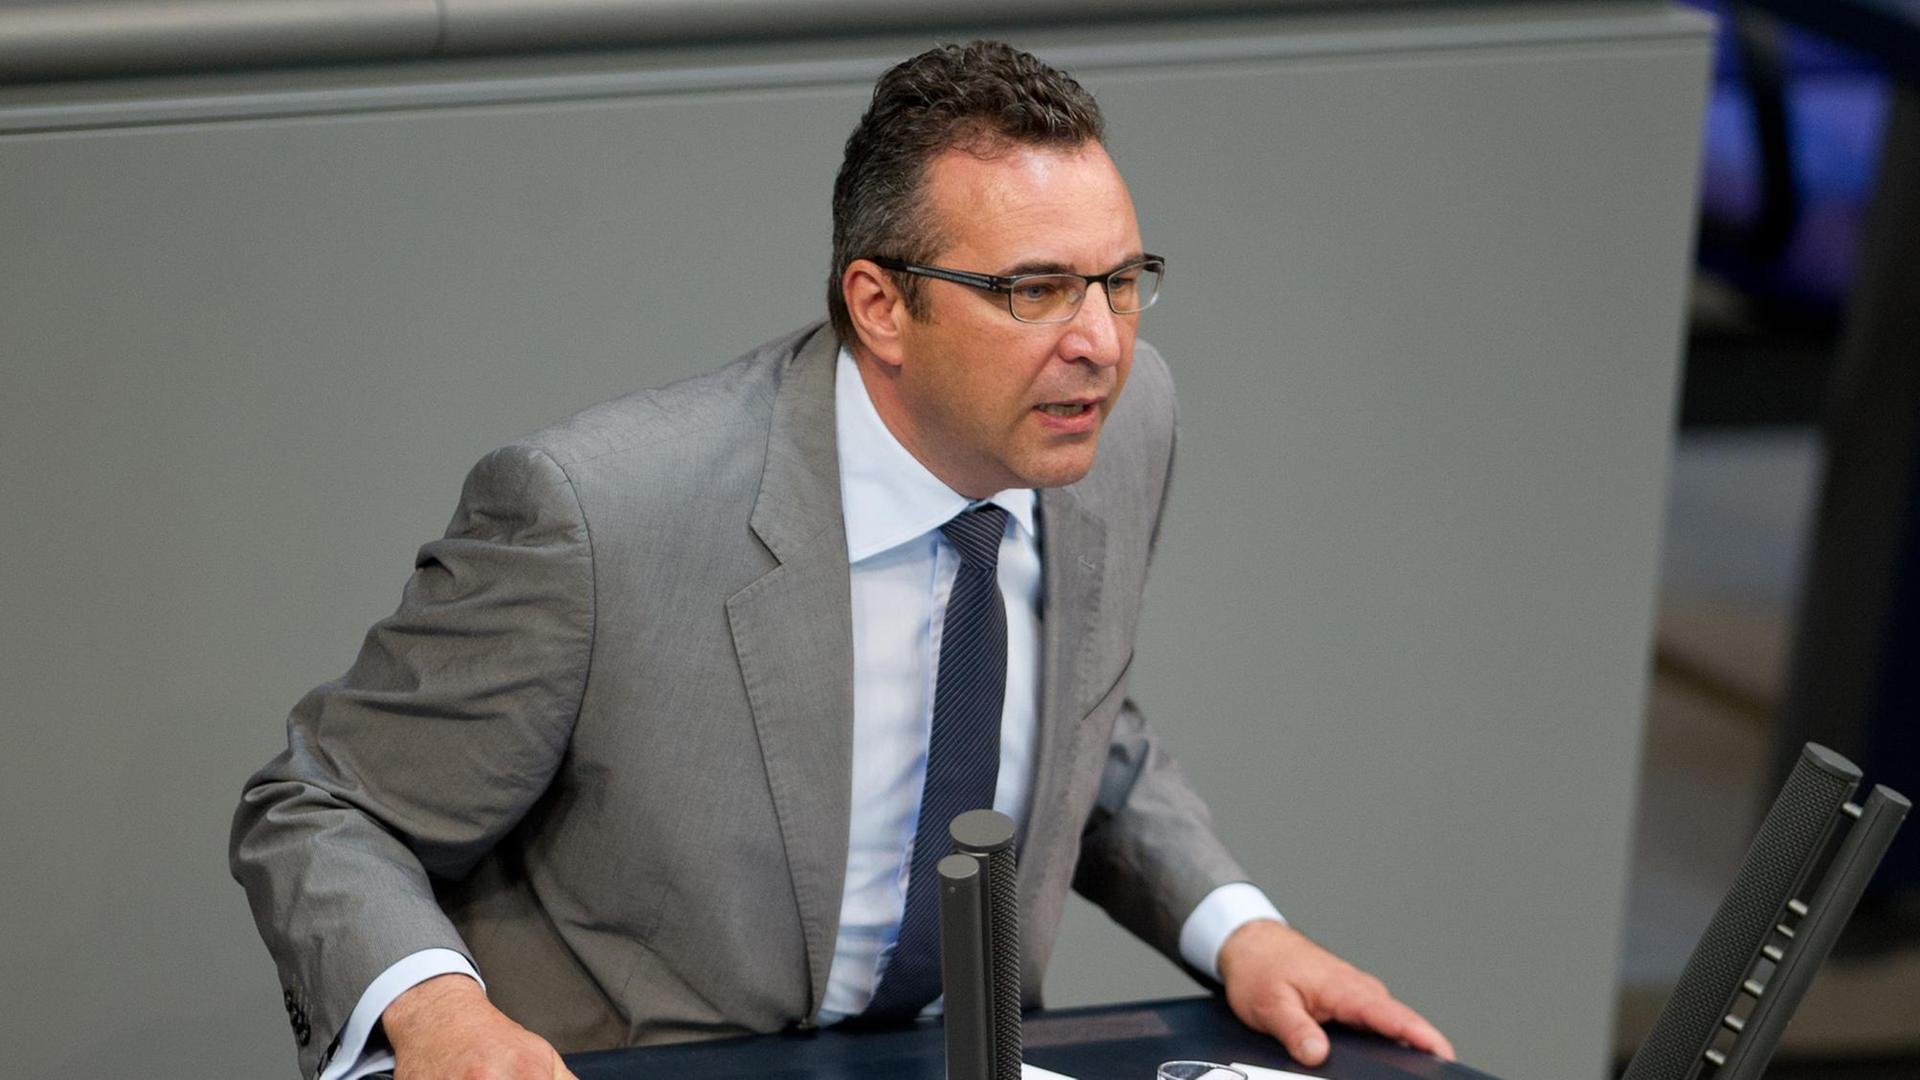 Joachim Pfeiffer, der wirtschaftspolitische Sprecher der Unionsfraktion im Bundestag, am Rednerpult im Bundestag